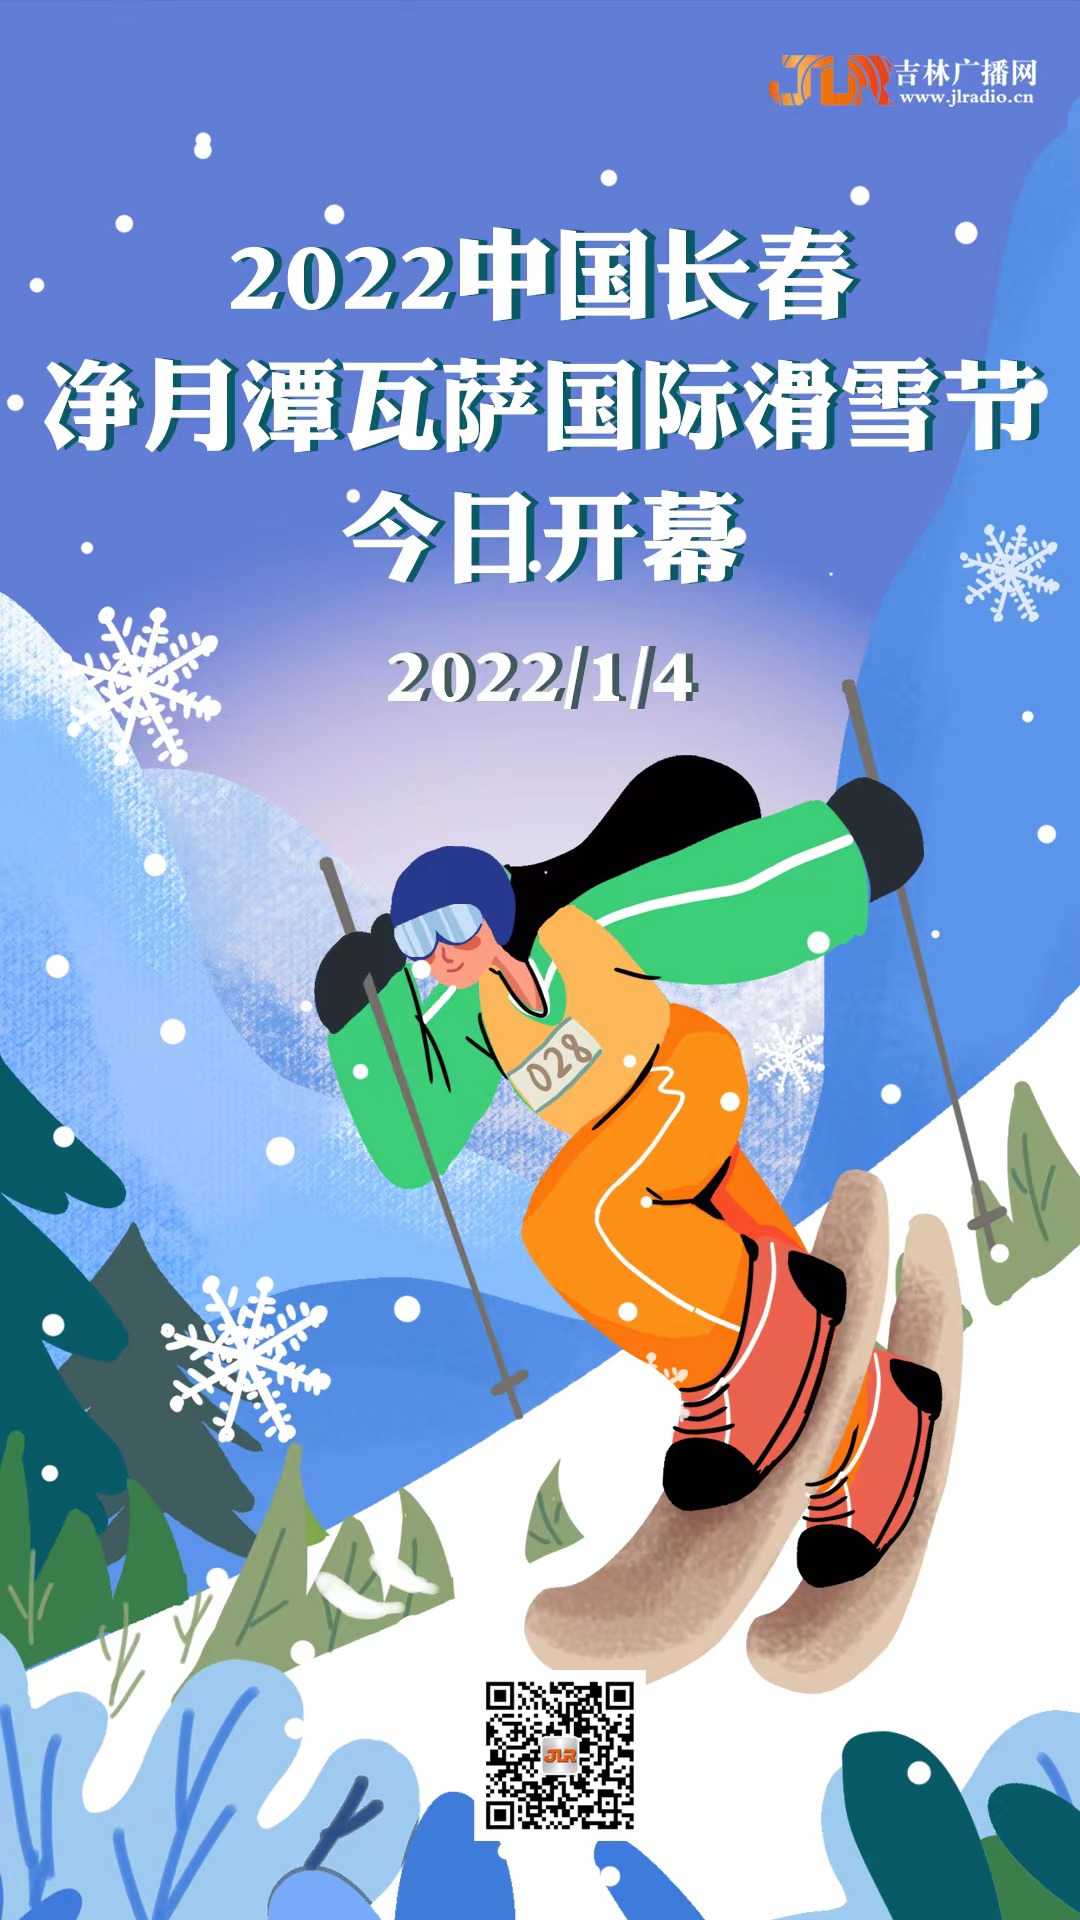 2022中国长春 净月潭瓦萨国际滑雪节今日开幕